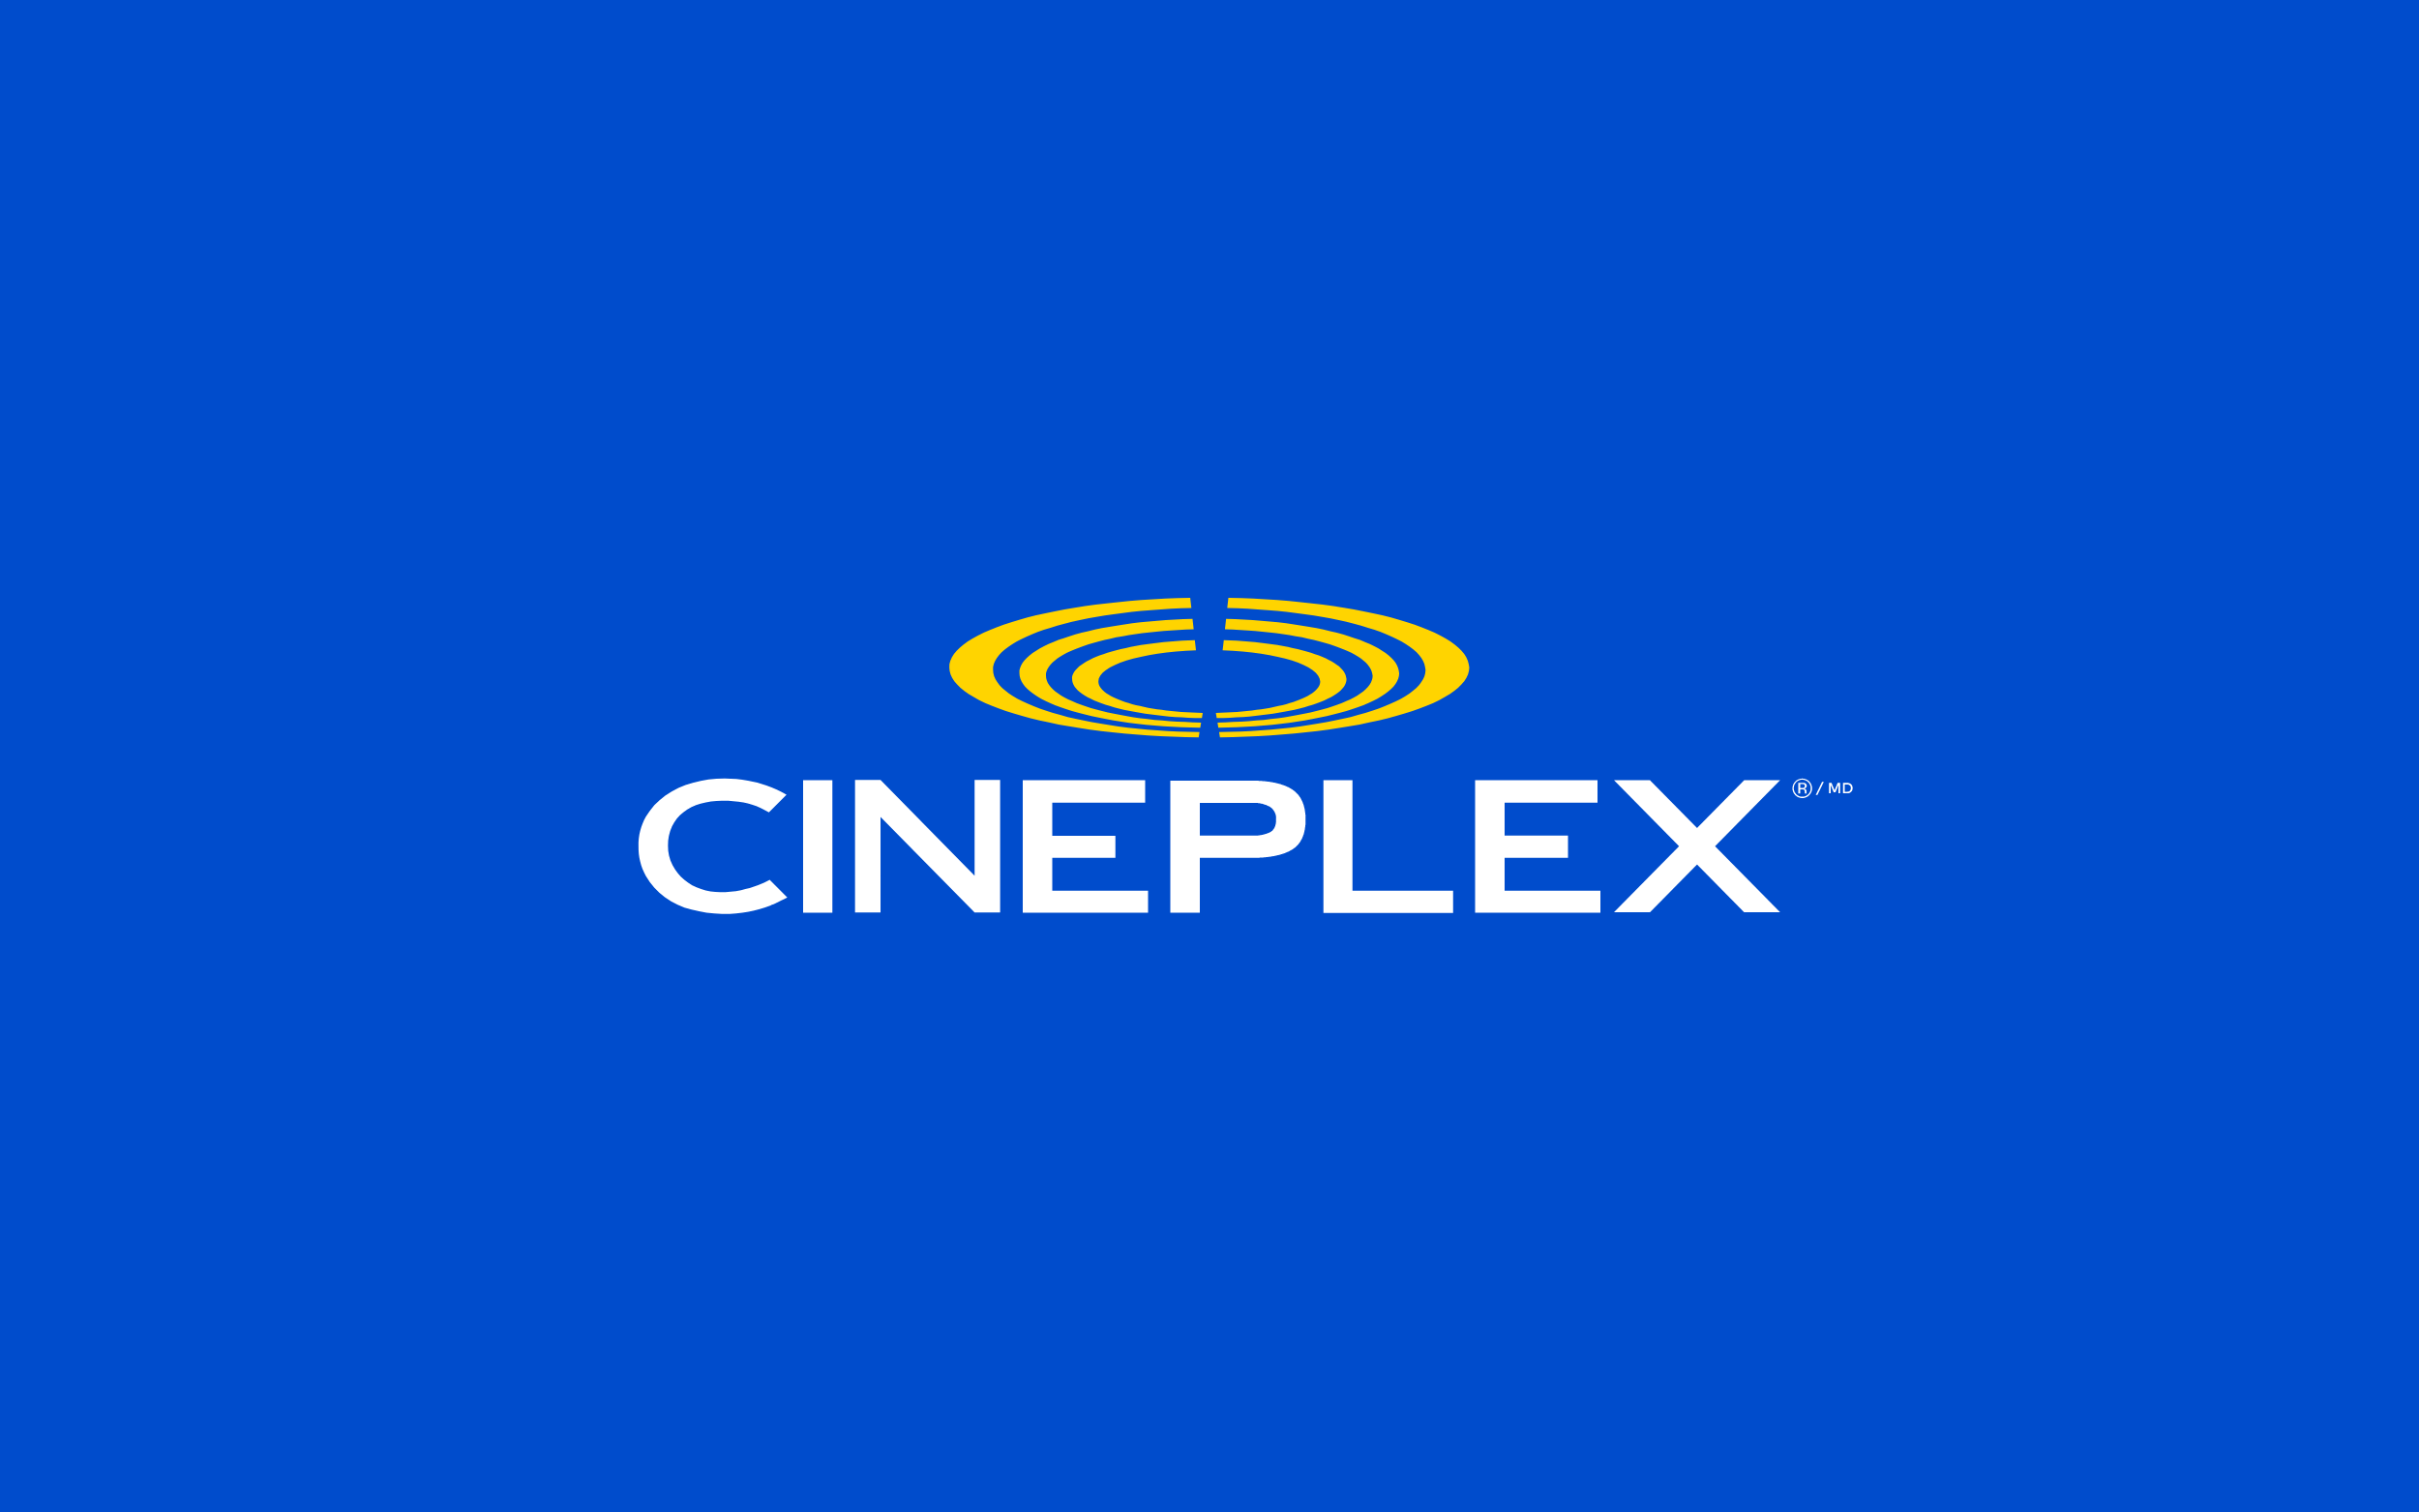 Cineplex image header